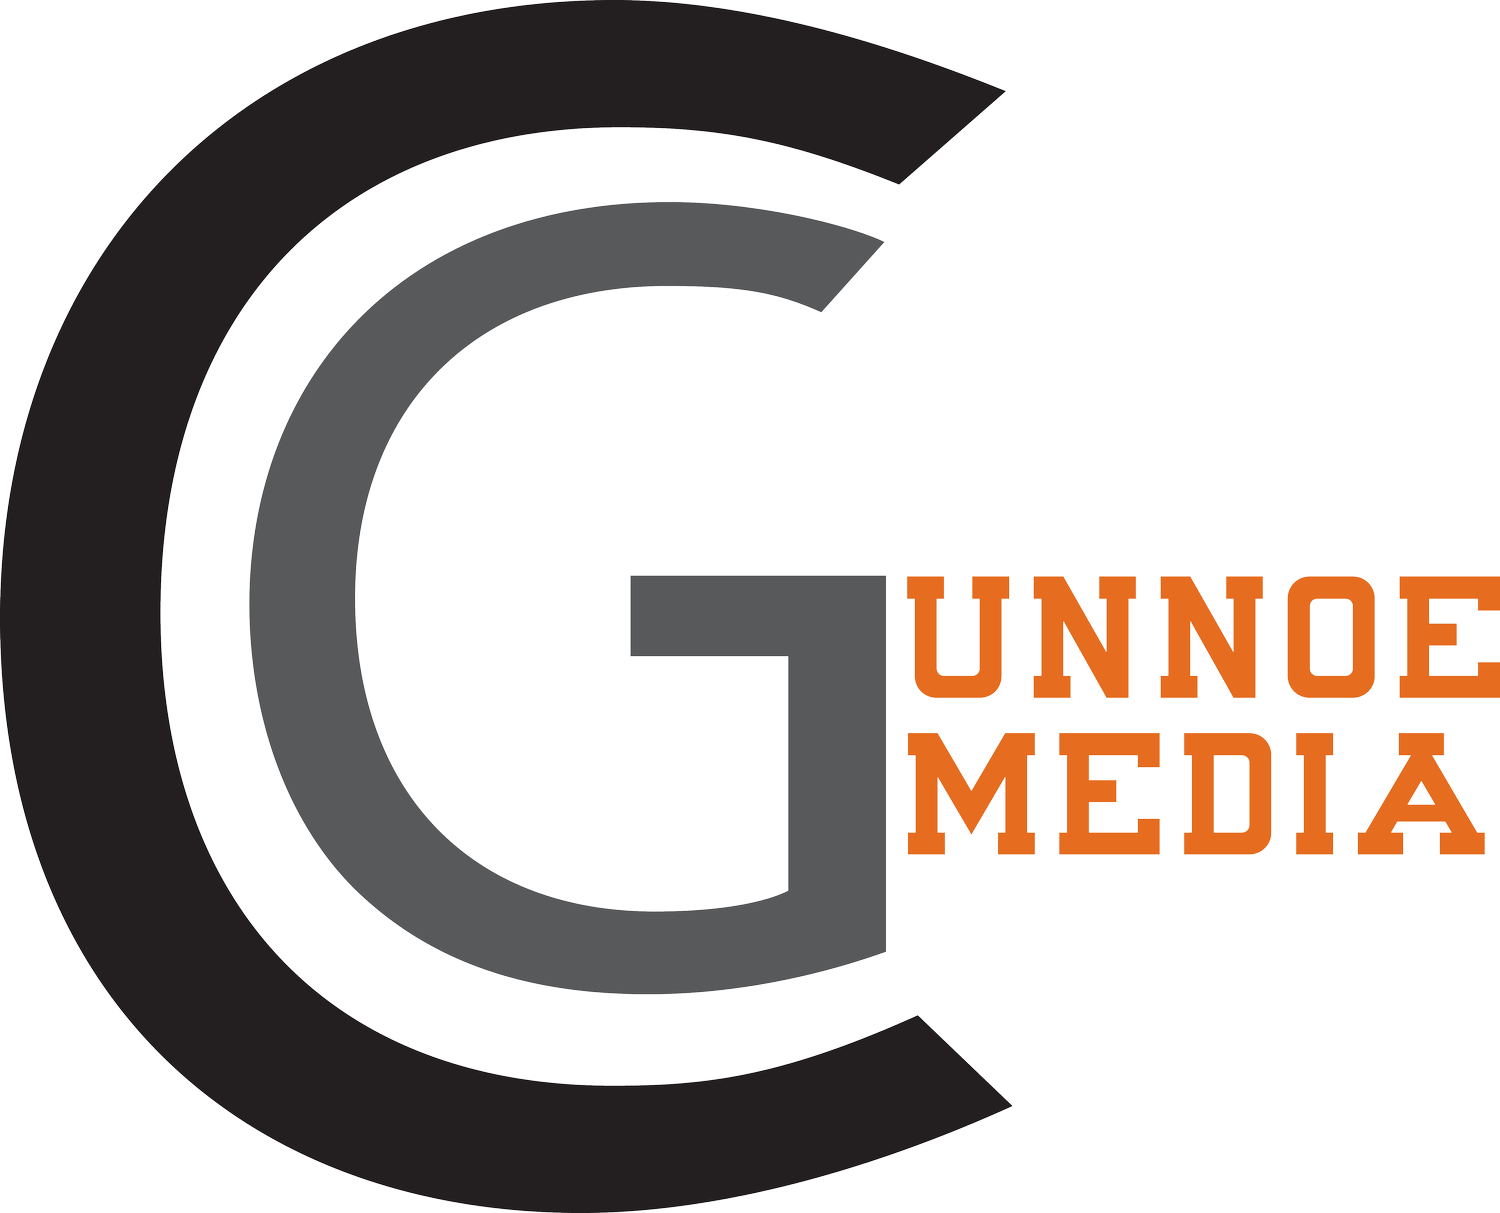 Gunnoe Media Group